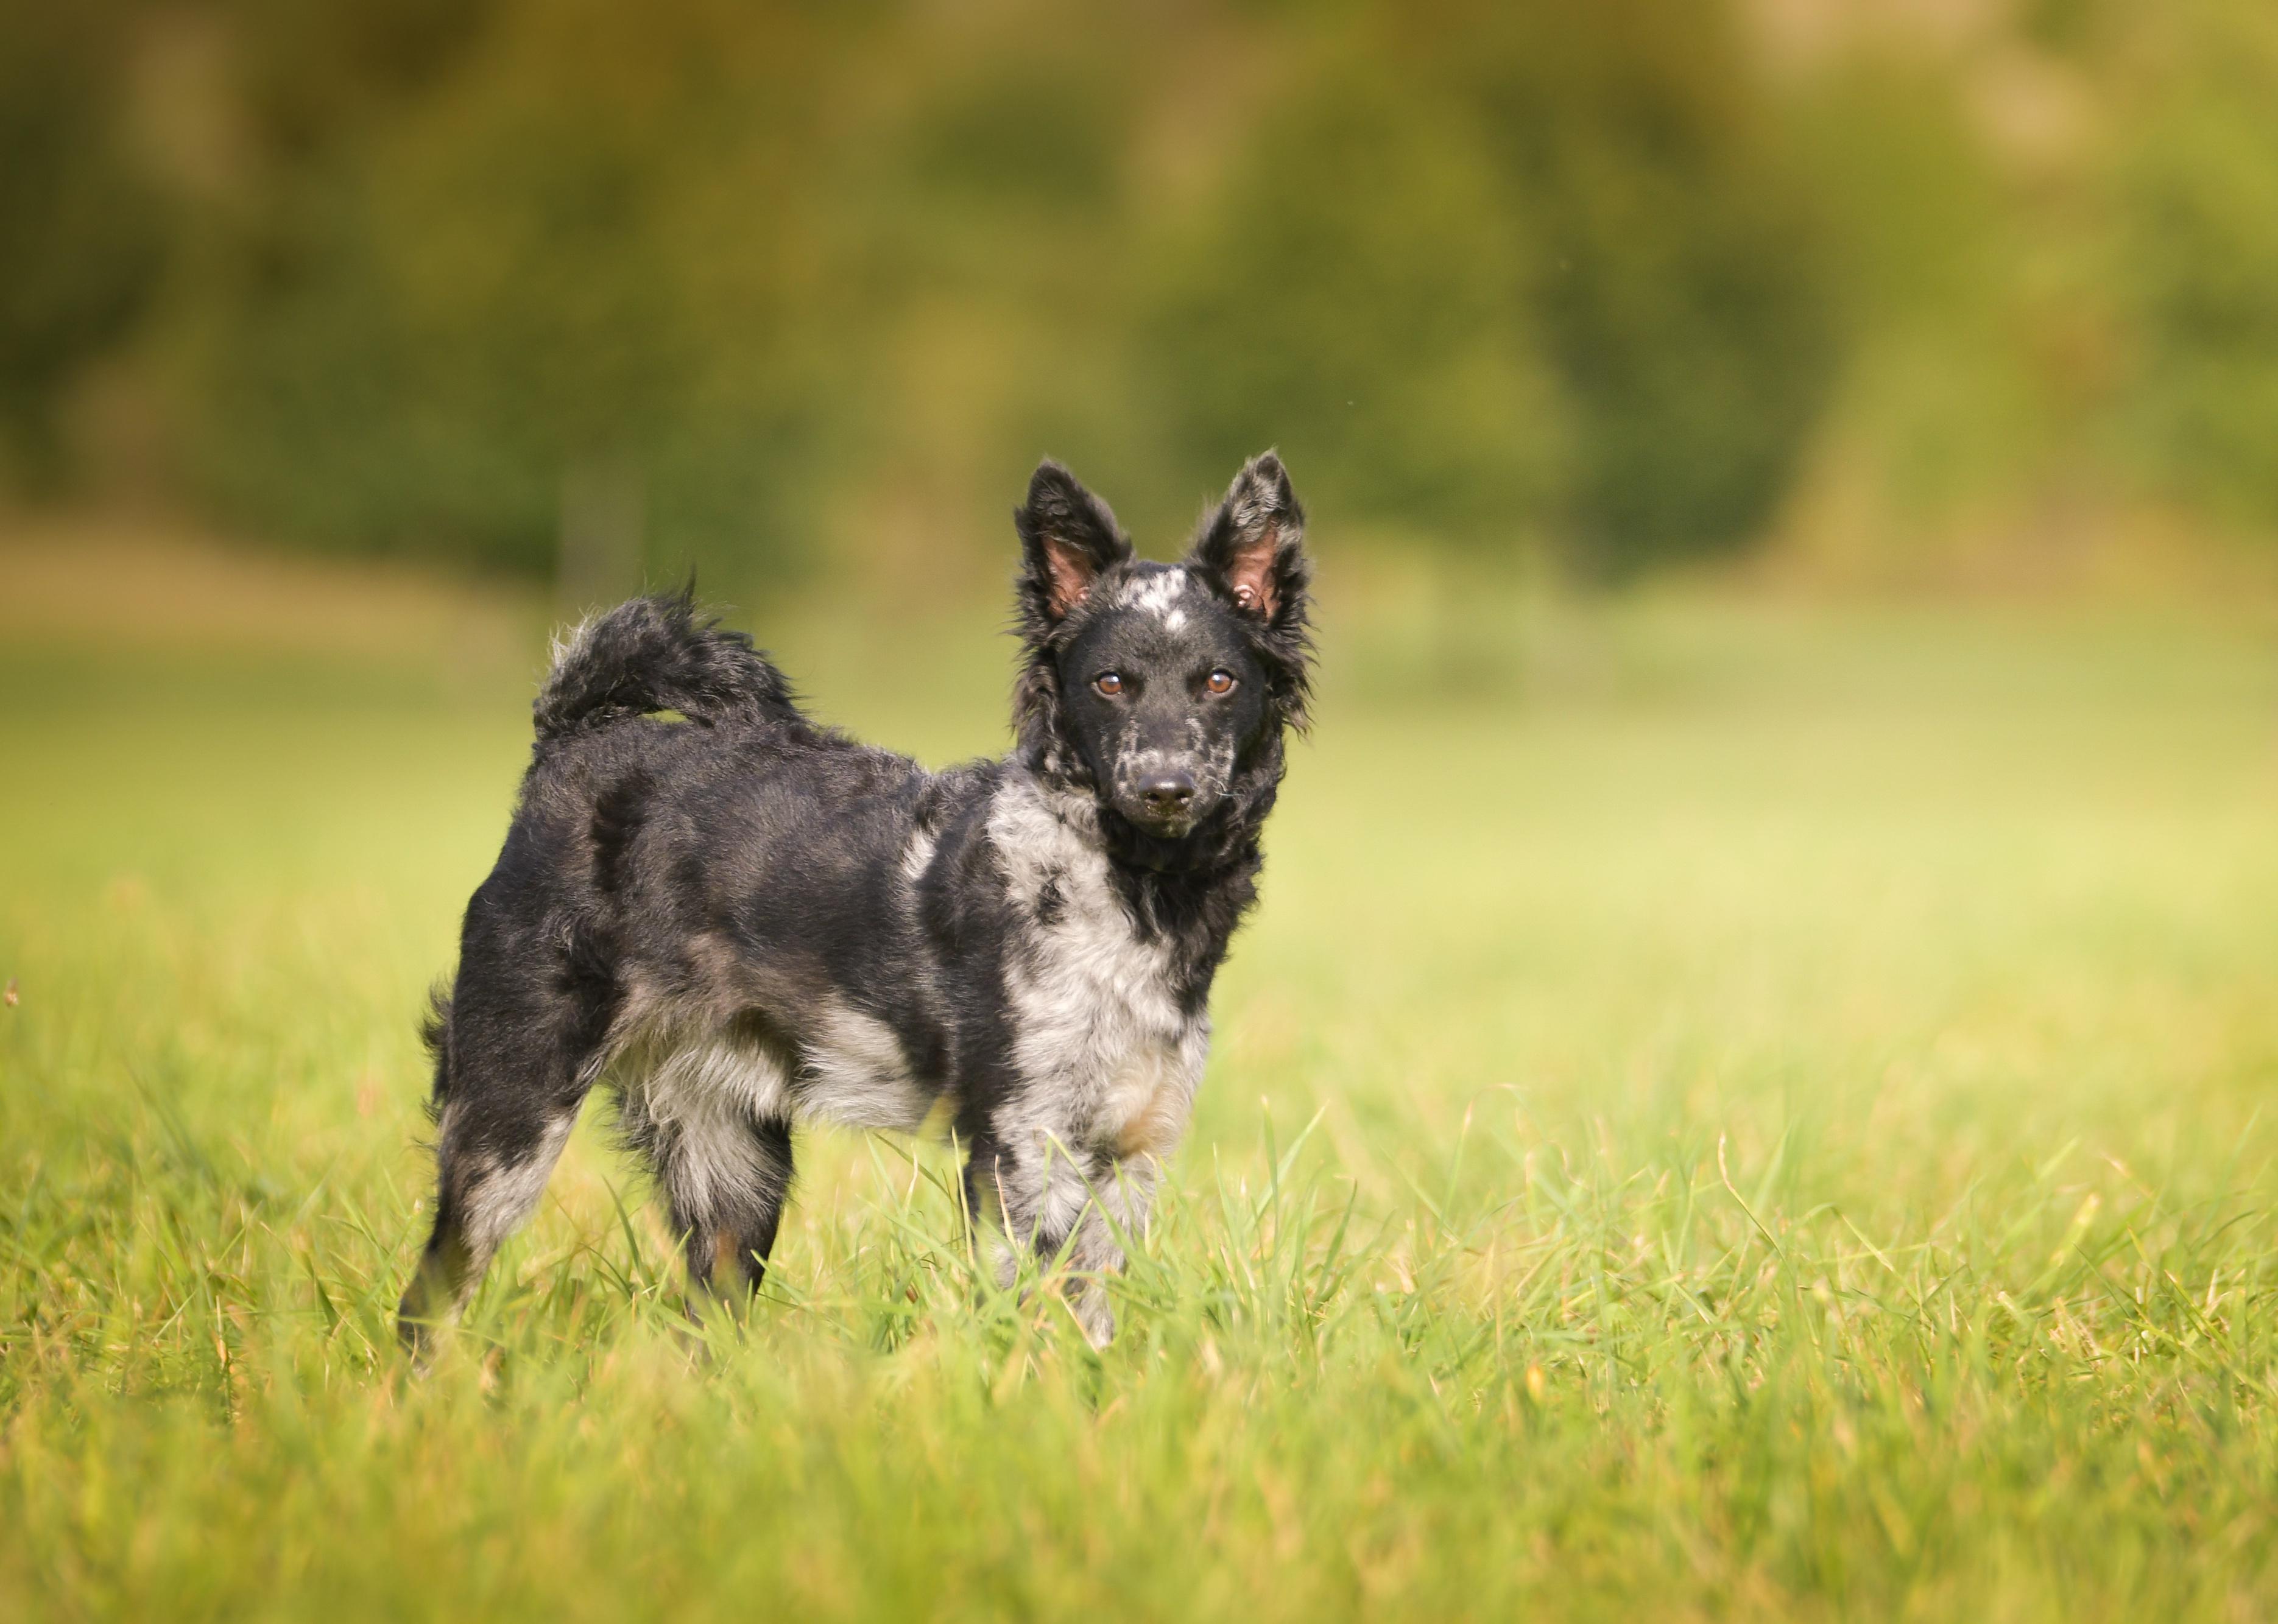 Puppy of a Mudi standing in grass field.